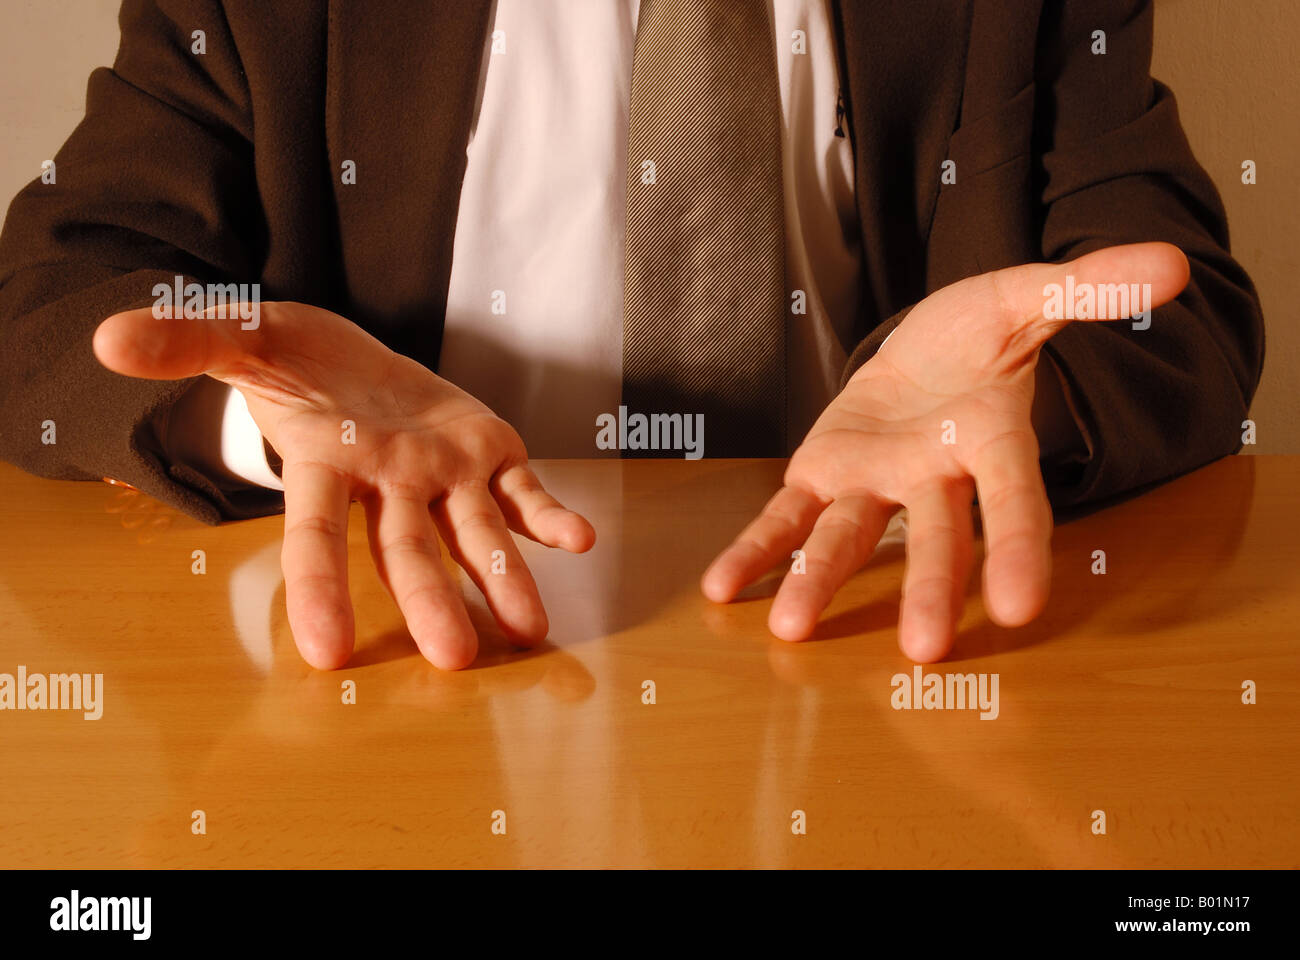 Los gestos de la mano: mostrando las palmas de la mano Fotografía de stock  - Alamy